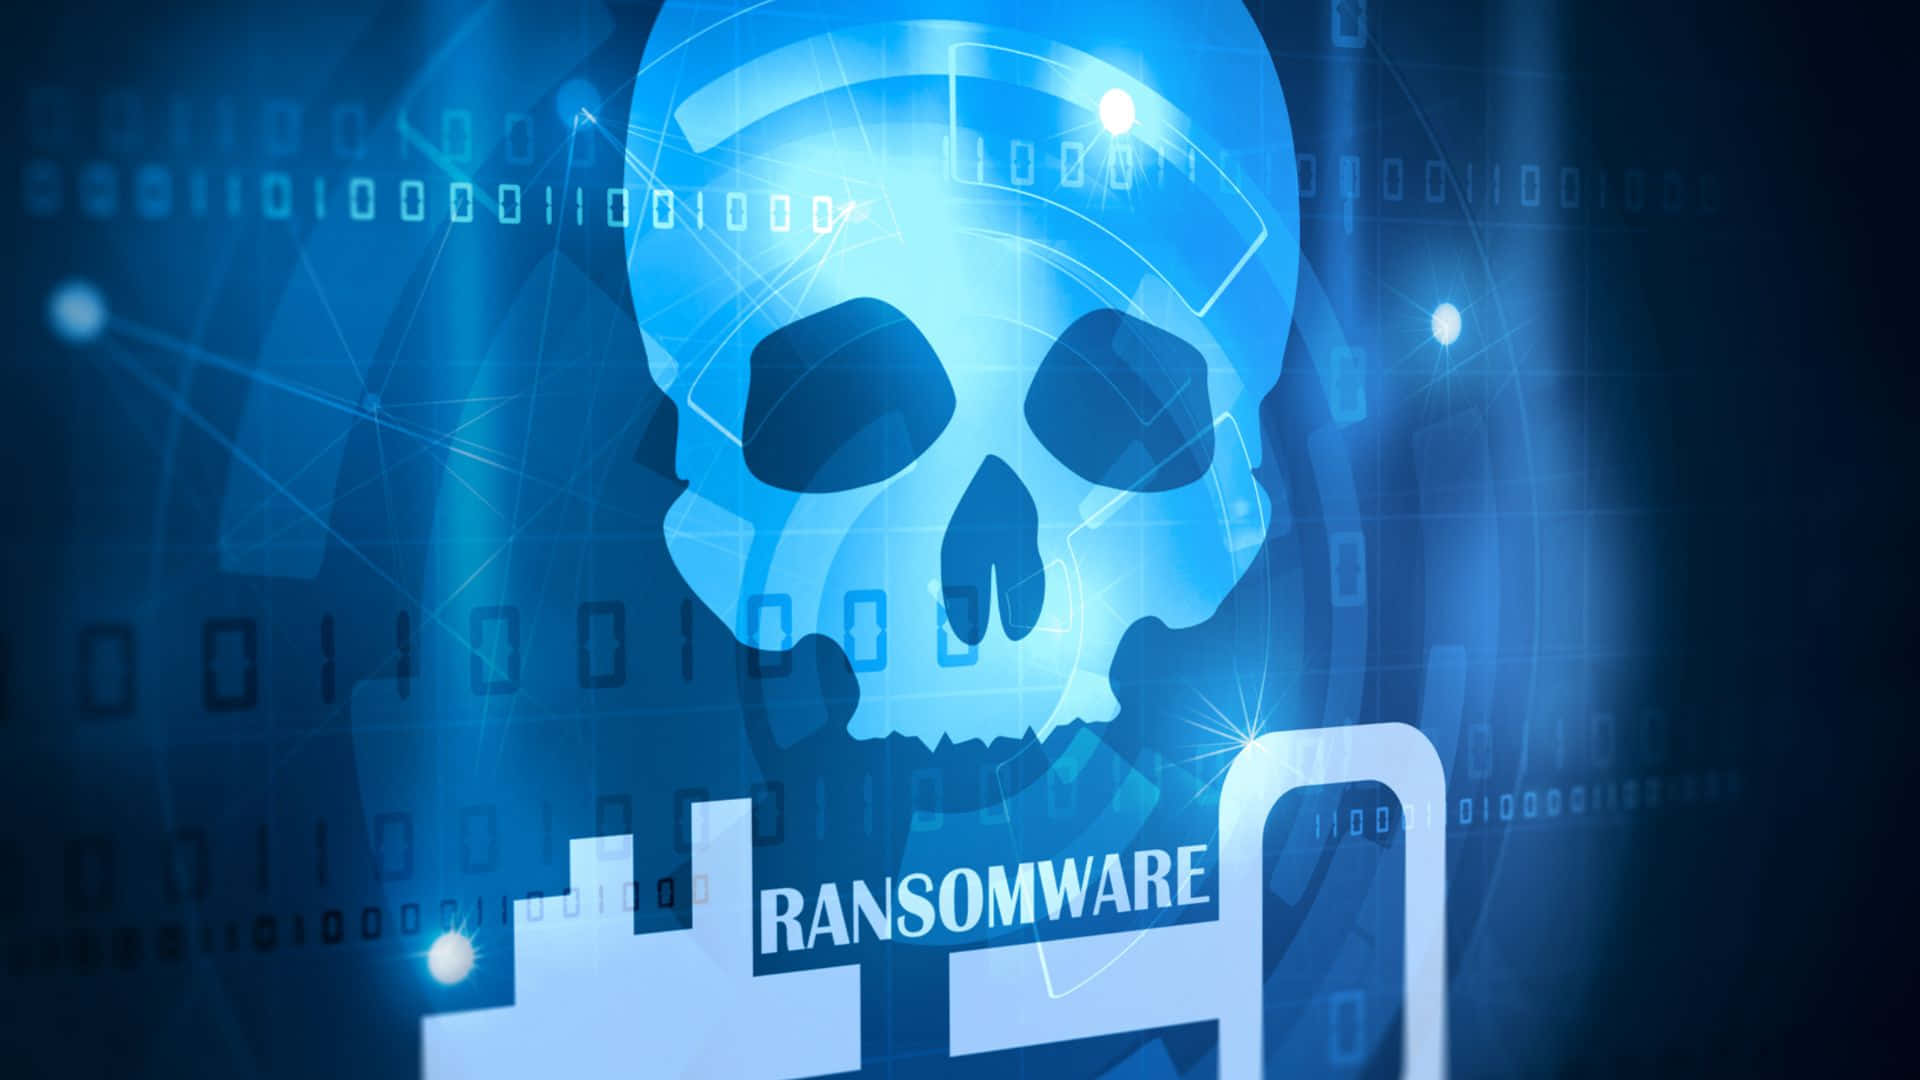 Knogle Visuel Brudt Nøgle Ransomware Malware Wallpaper